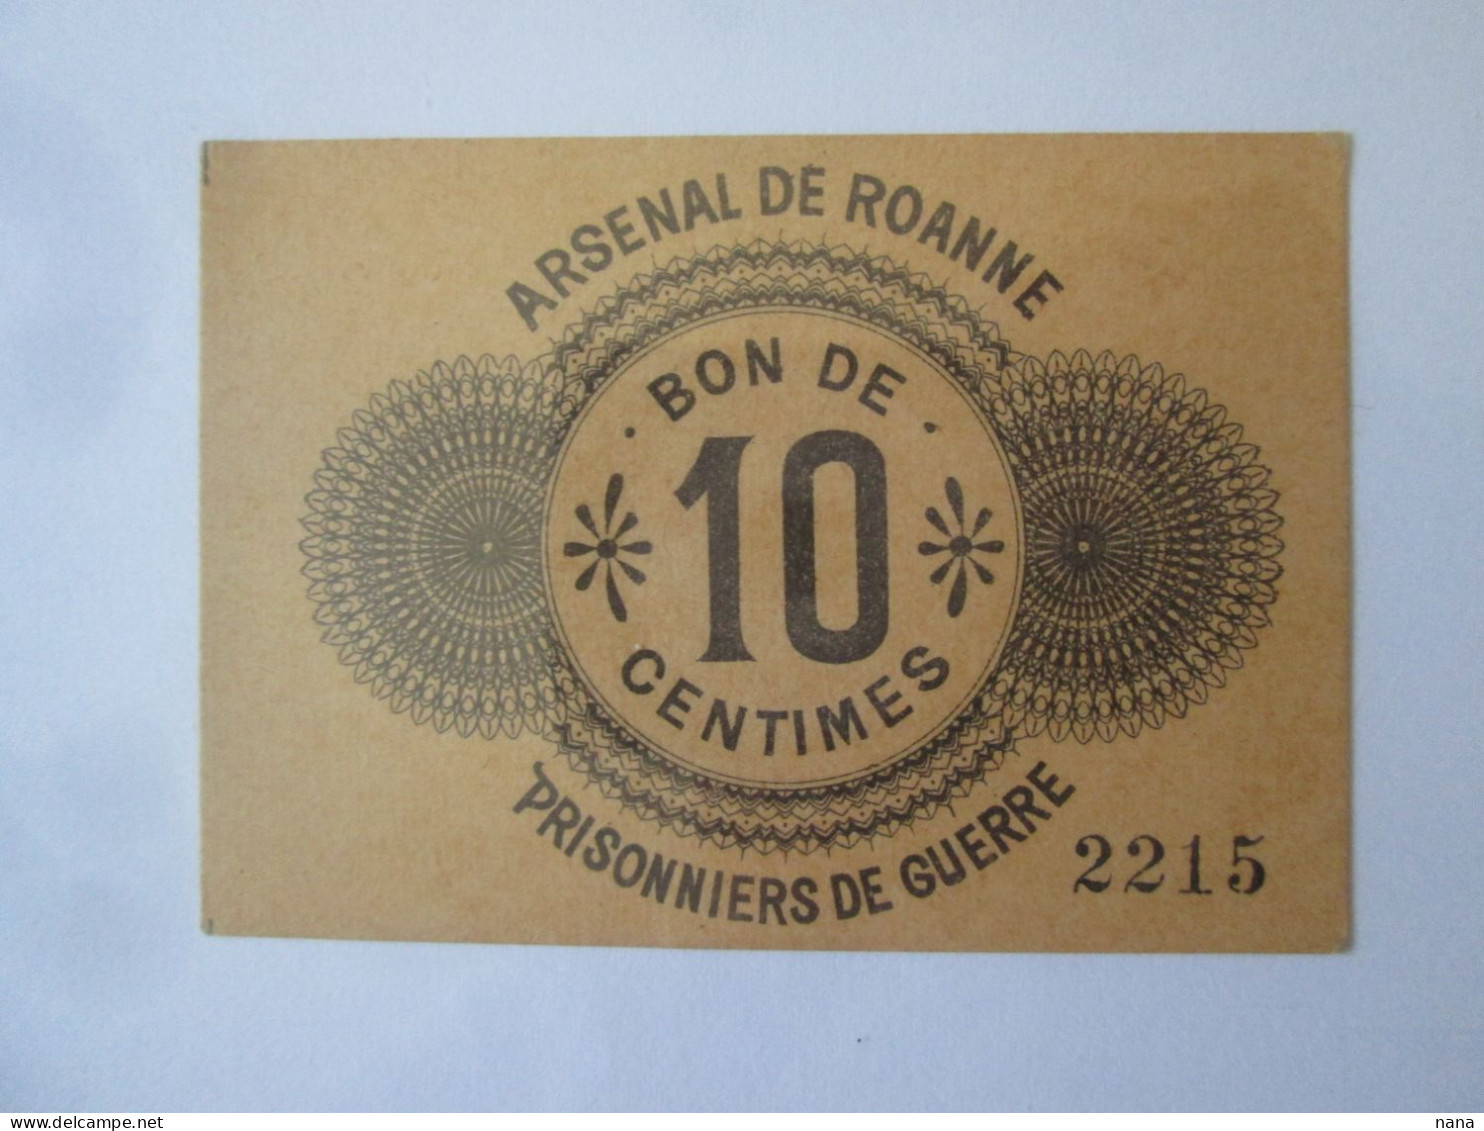 France:Bon 10 Centimes 1914-1918 Prisonniers De Guerre Arsenal De Roanne/Voucher 10 Centimes 1914-1918 Prisoniers Of WWI - Bons & Nécessité